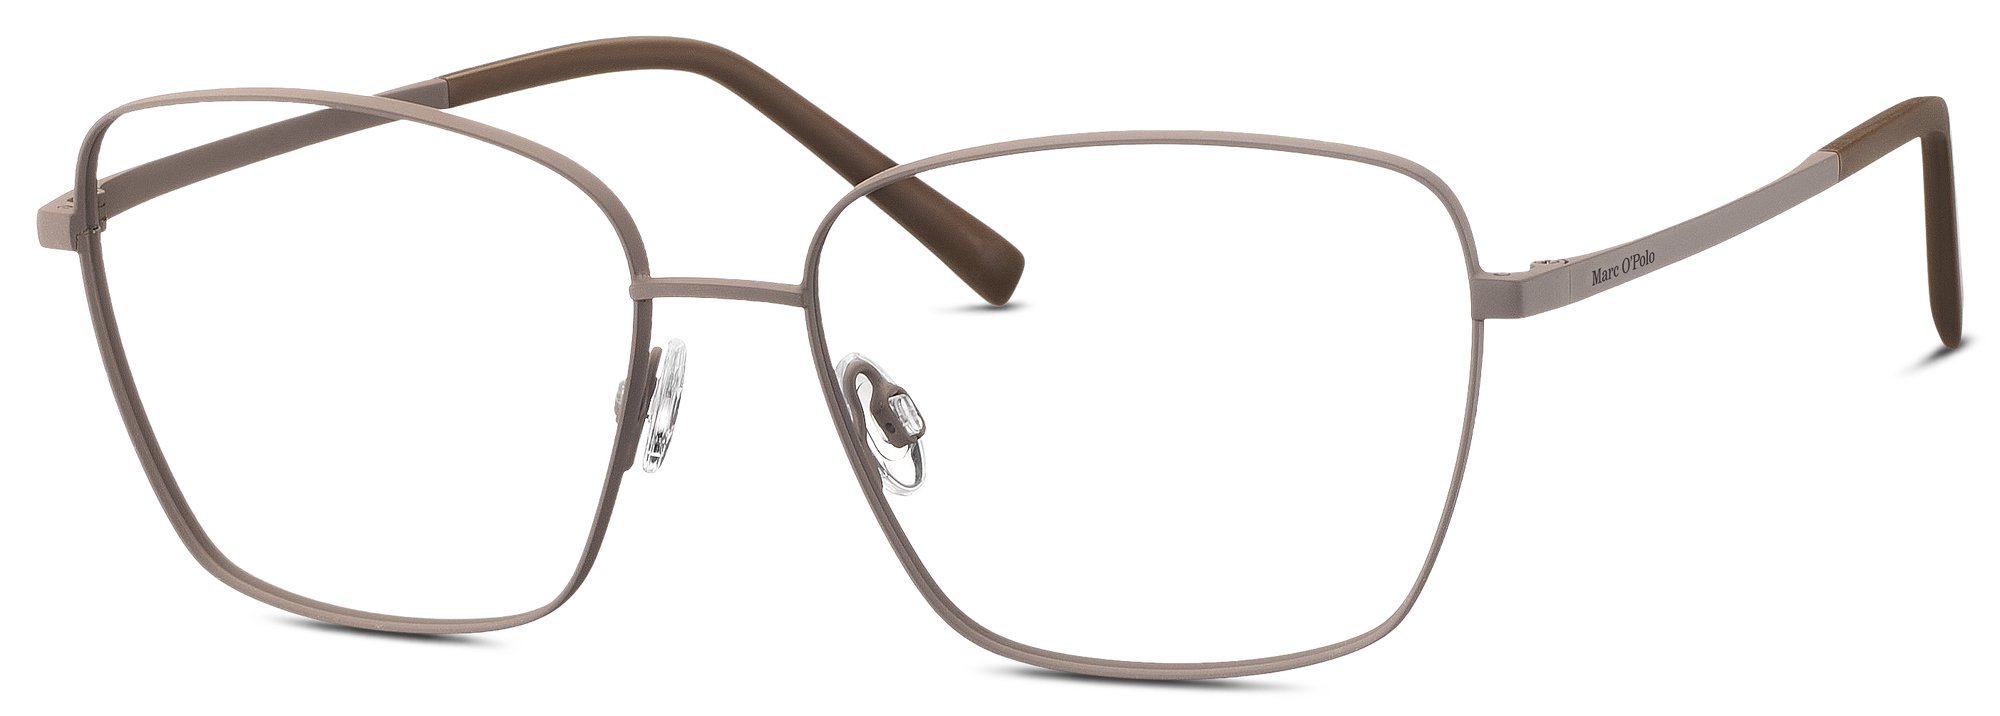 Das Bild zeigt die Korrektionsbrille 502180 60 von der Marke Marc O‘Polo in braun.